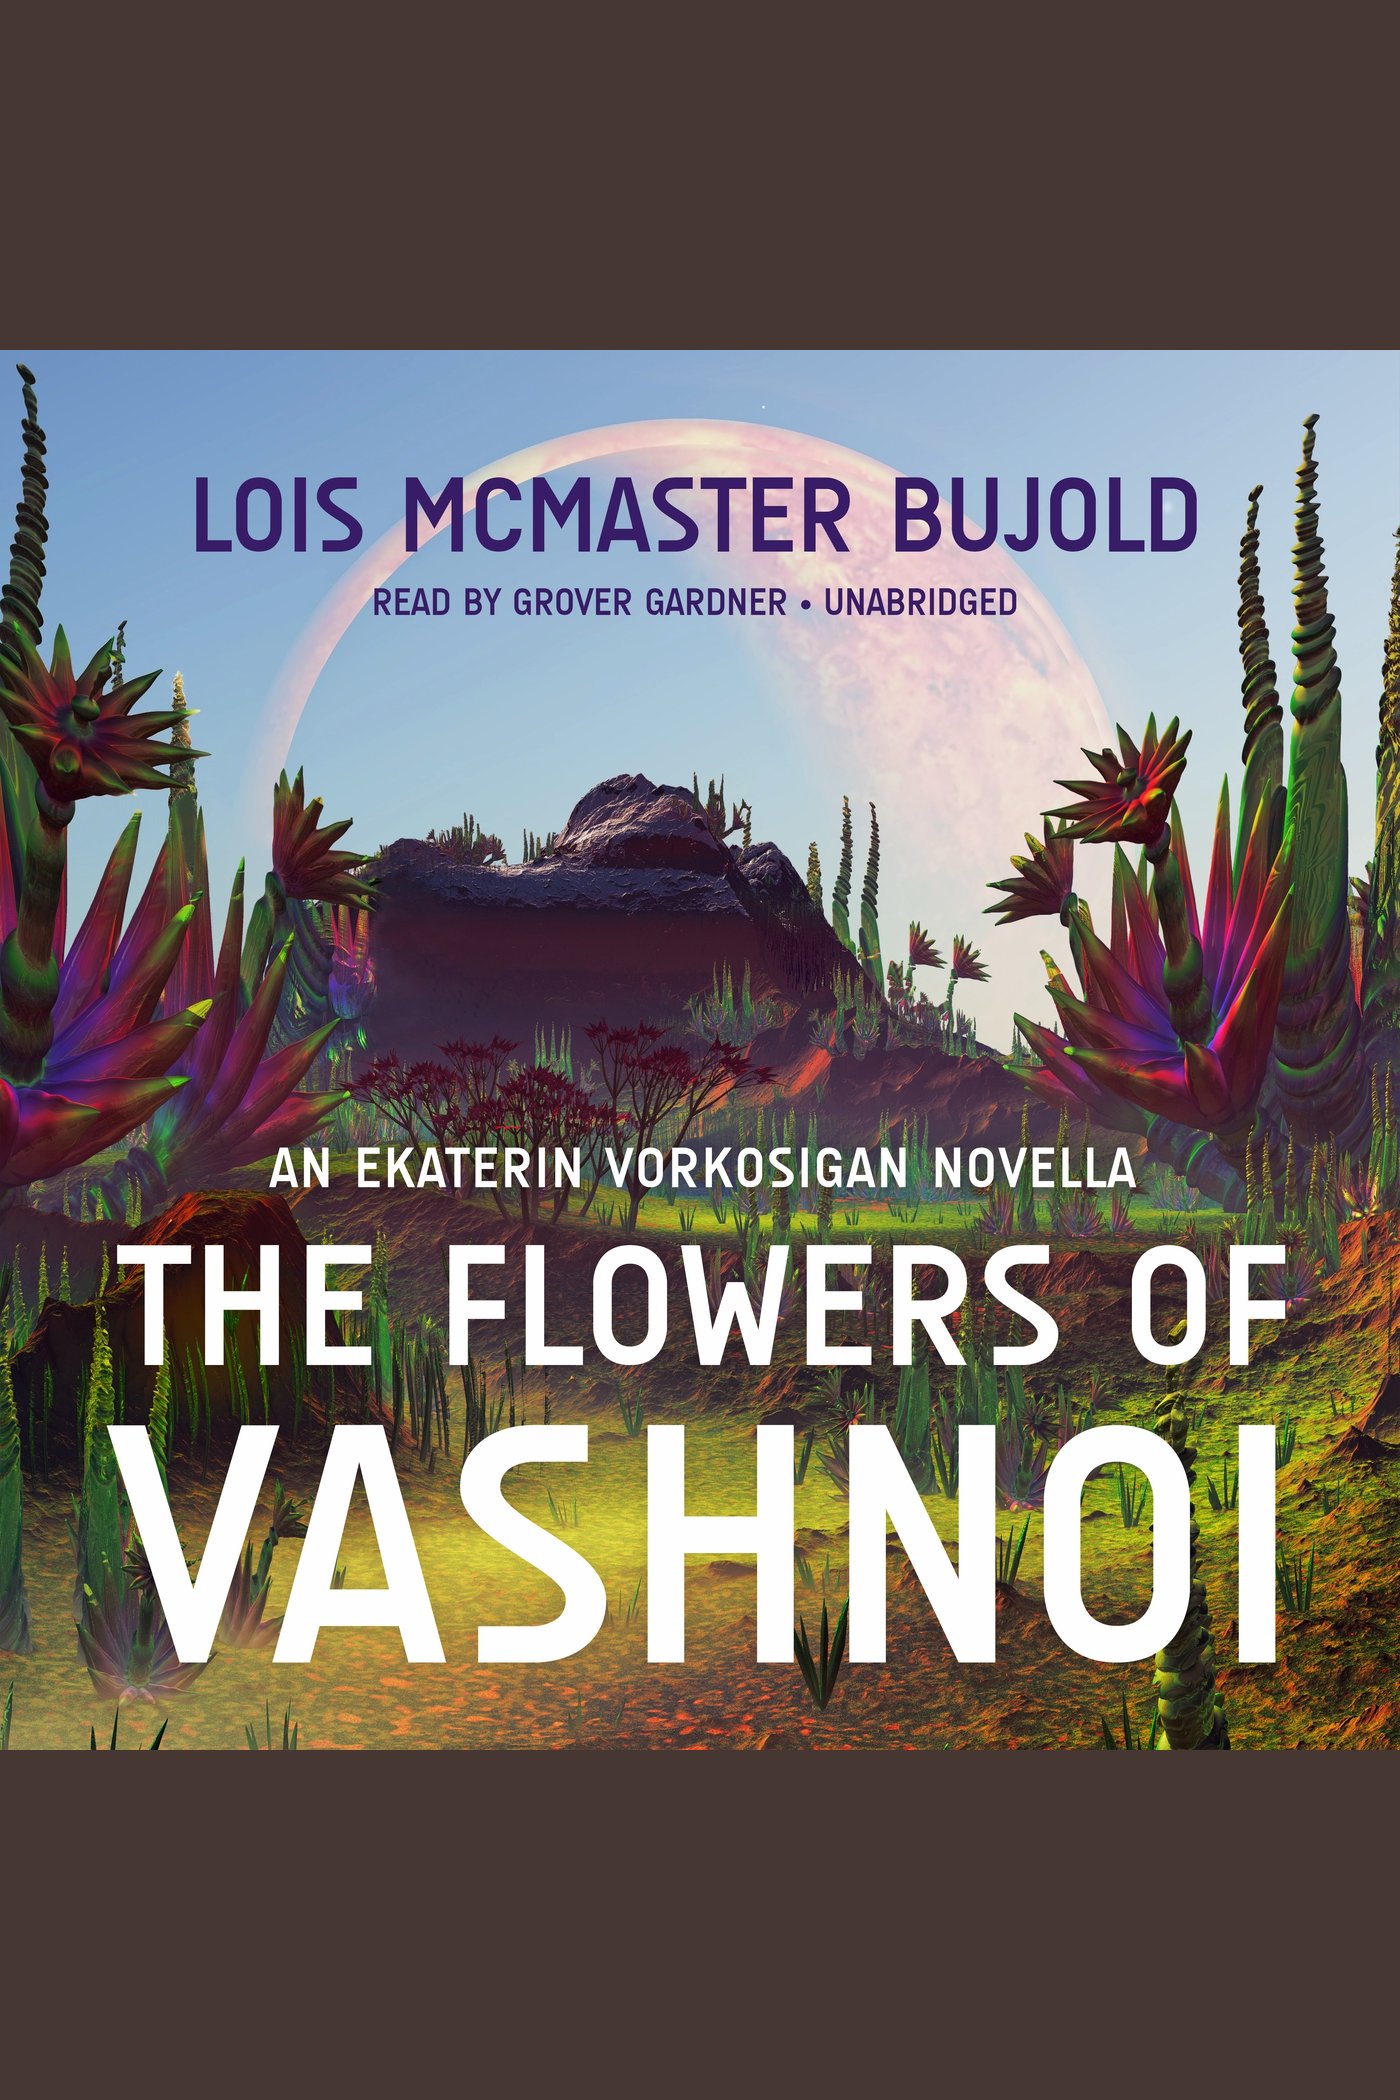 The Flowers of Vashnoi cover image